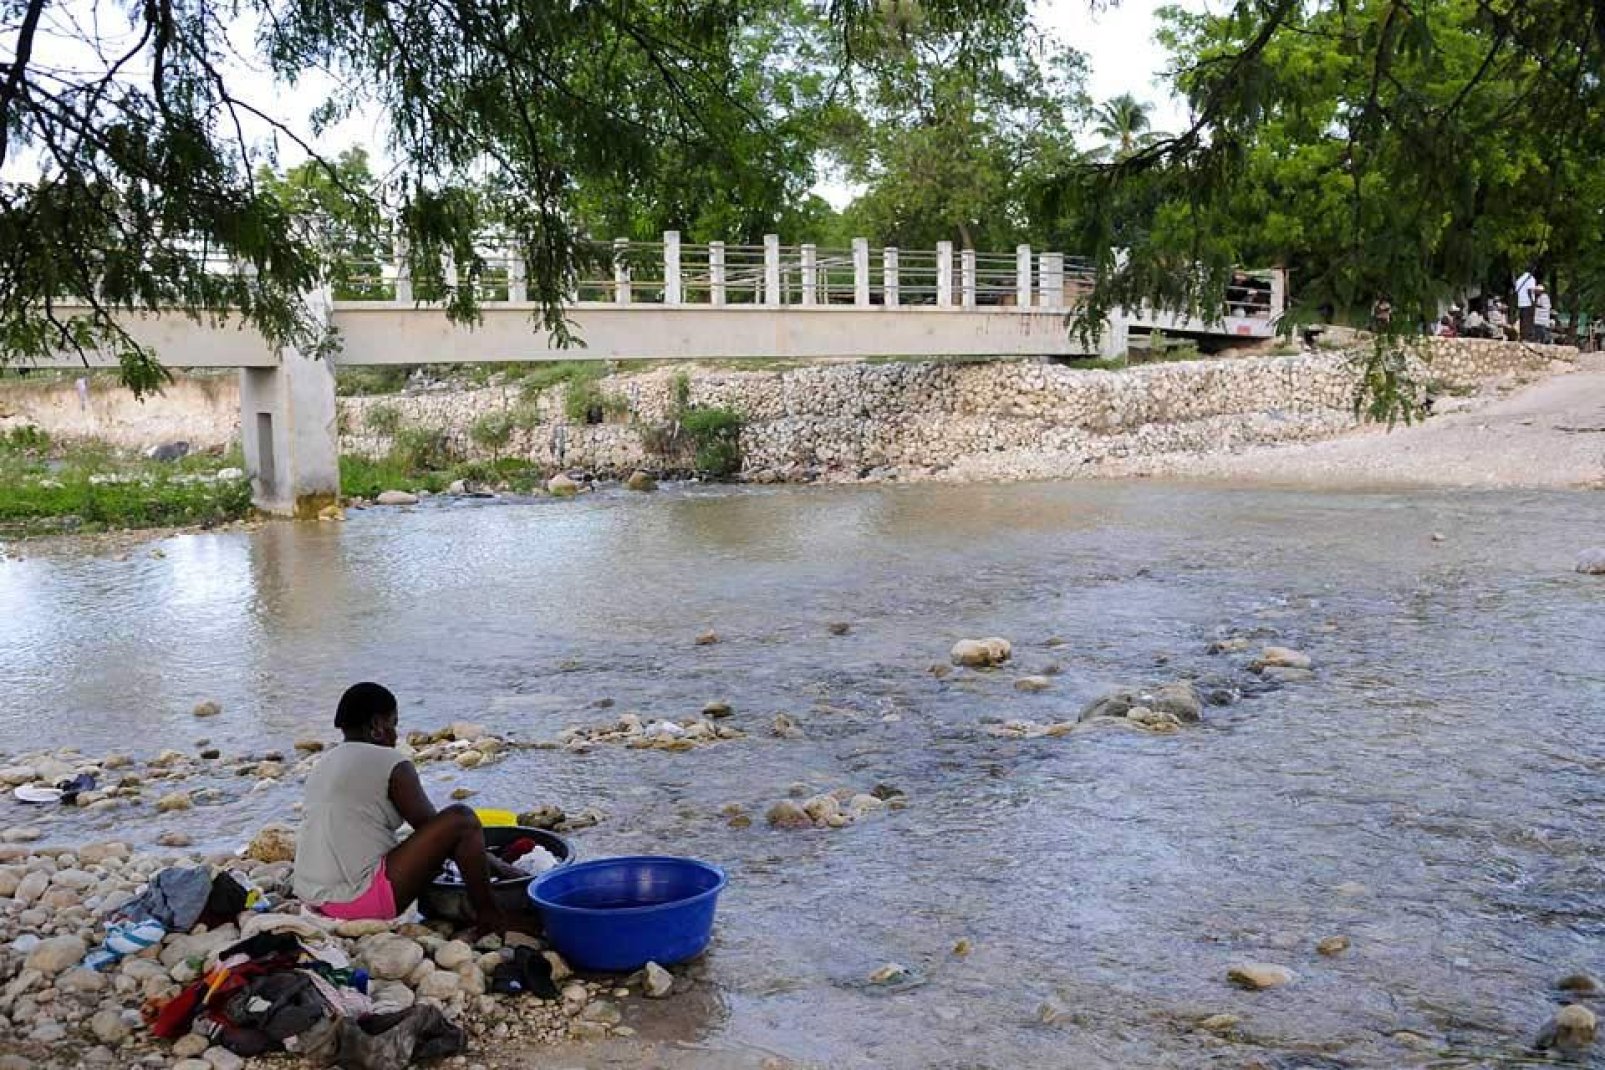 Un ponte pedonale attraversa il fiume segnando il confine per recarsi ad Anse-a-Pitres, ad Haiti.